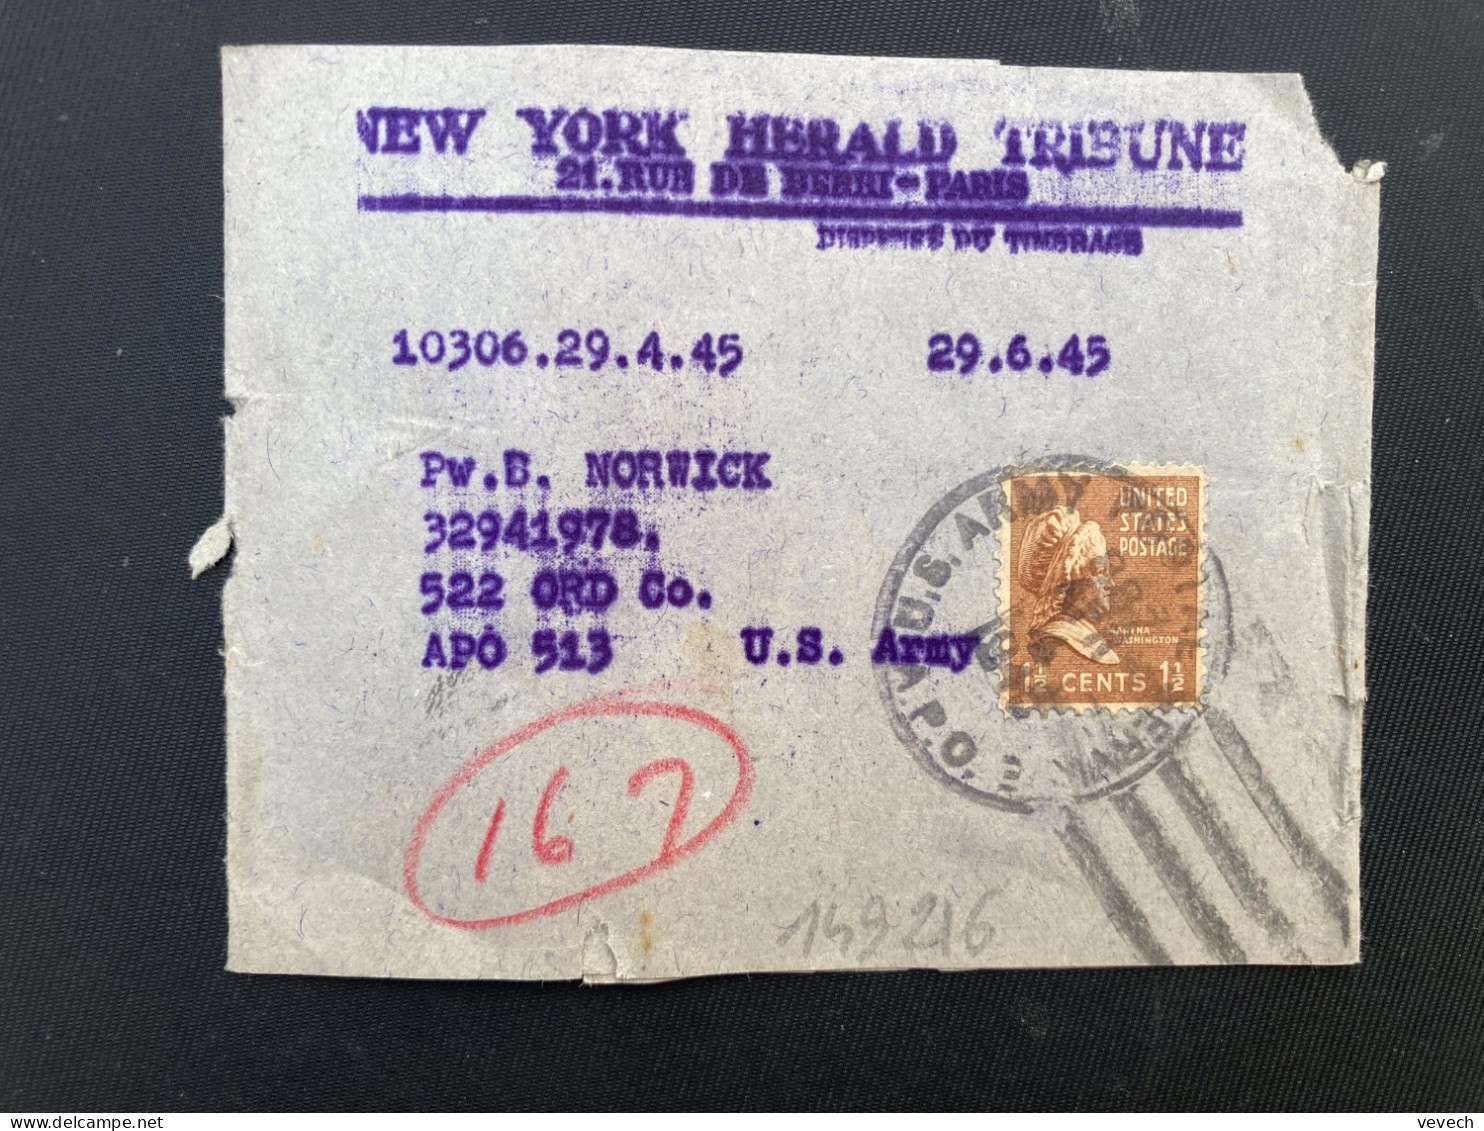 BJ NEW YORK HERALD TRIBUNE Pour APO 513 TP WASHINGTON 1 1/2c OBL.MEC.APR 4 1945 APO 3 - Poststempel